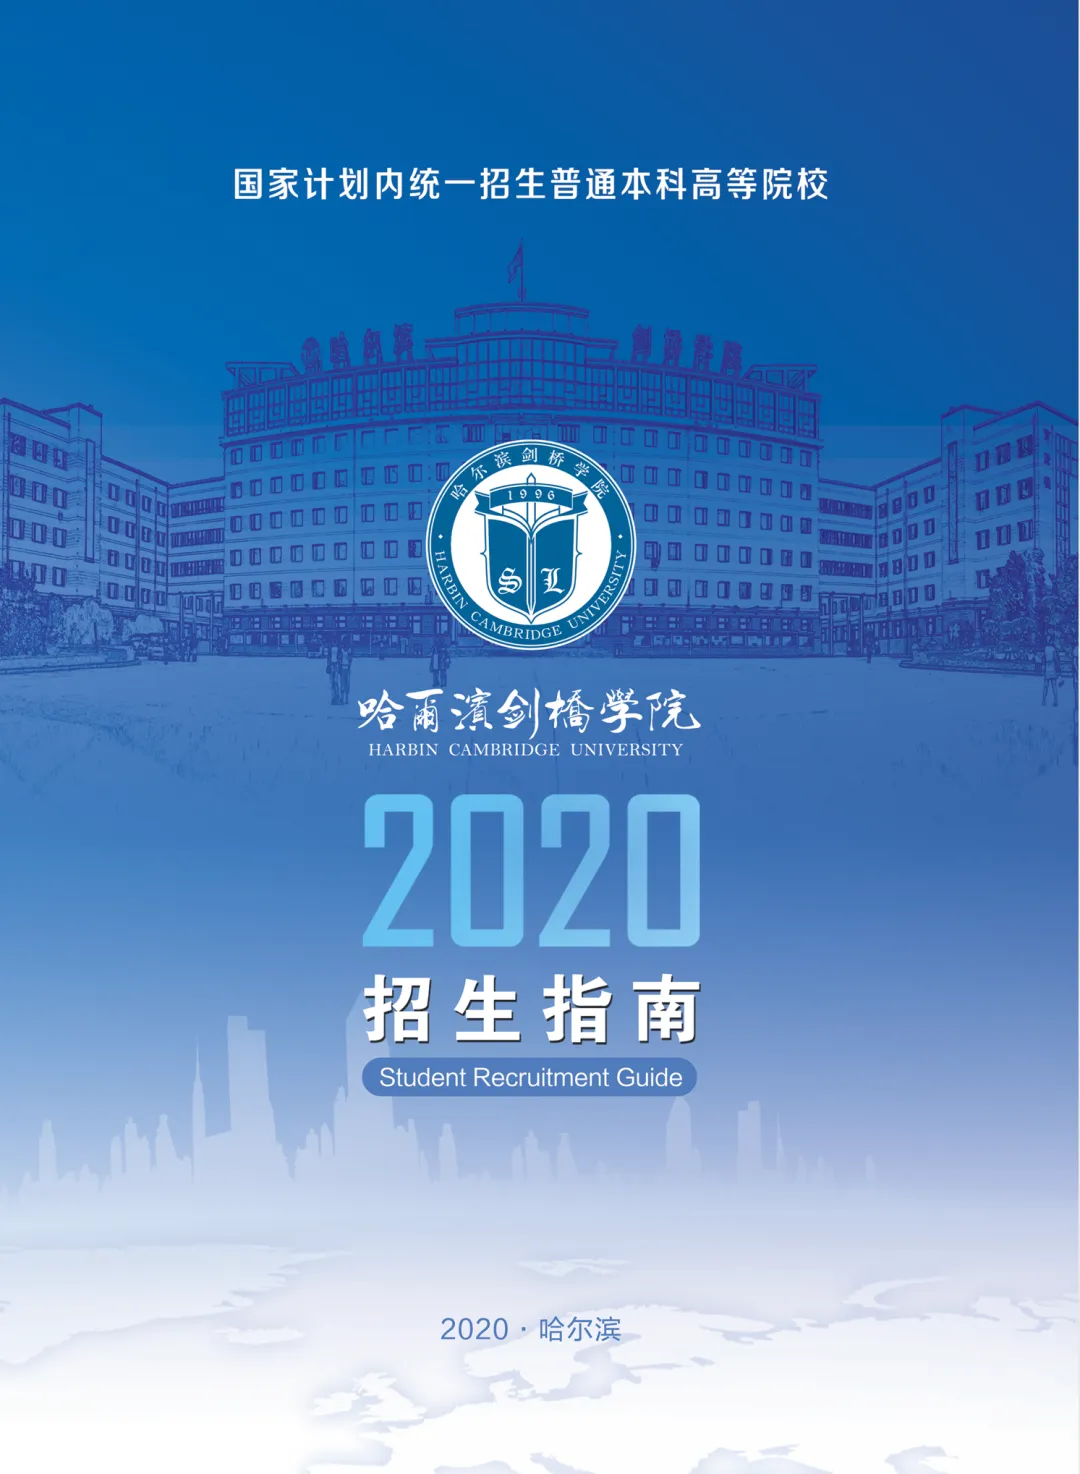 哈尔滨剑桥学院2020招生指南 